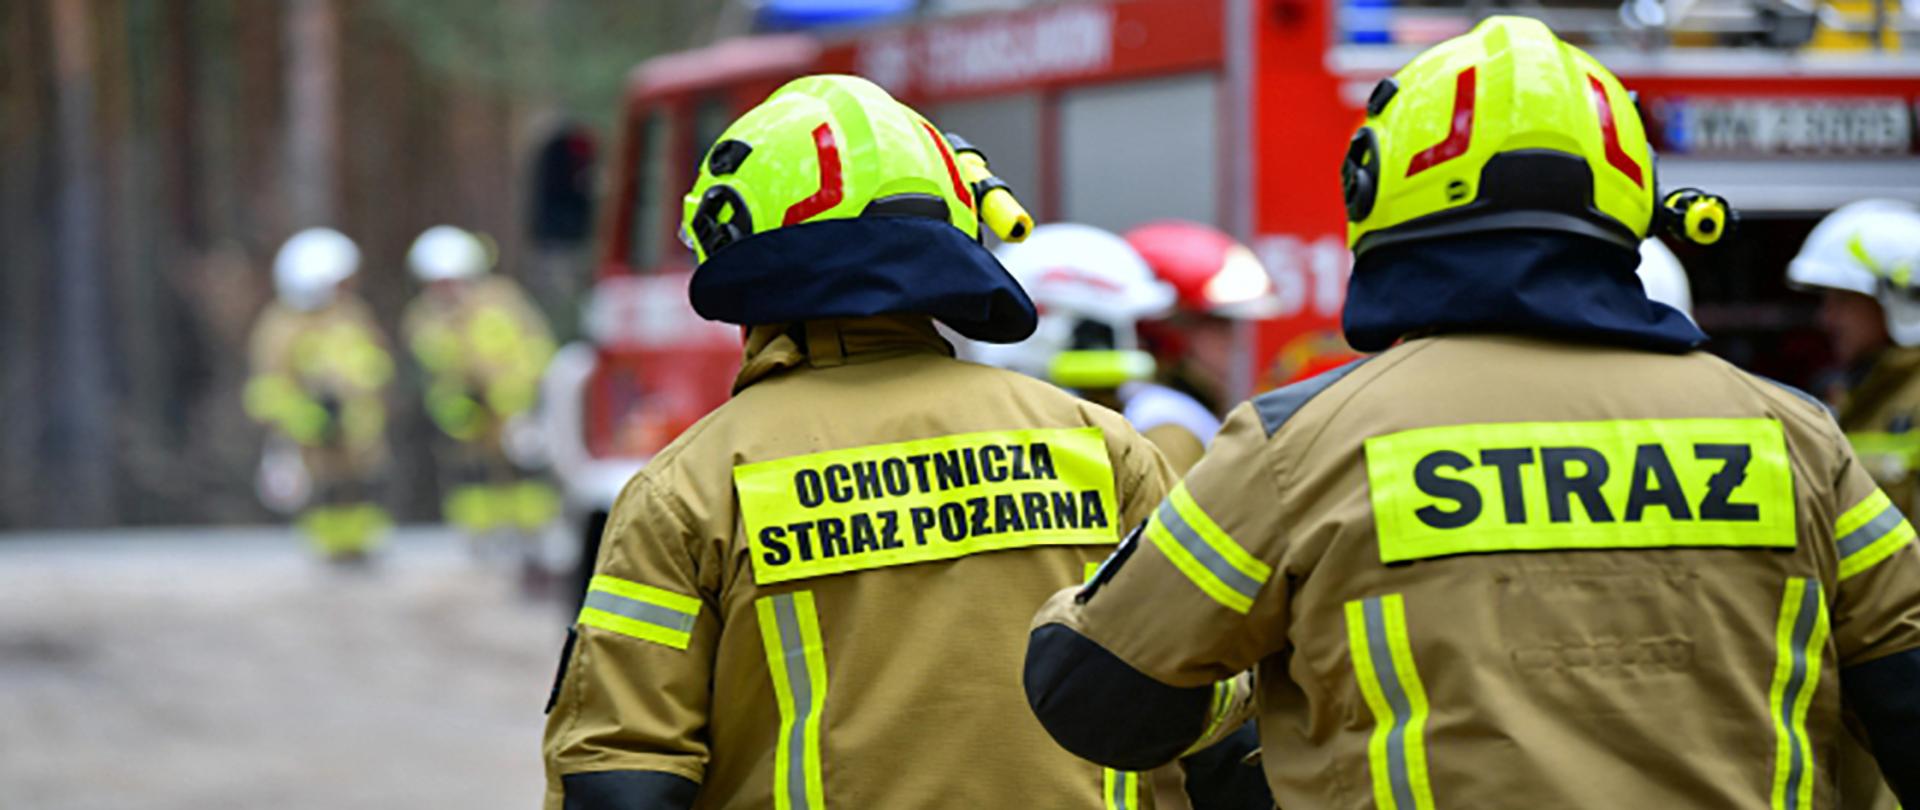 Dwóch strażaków OSP w jasnych strojach roboczych